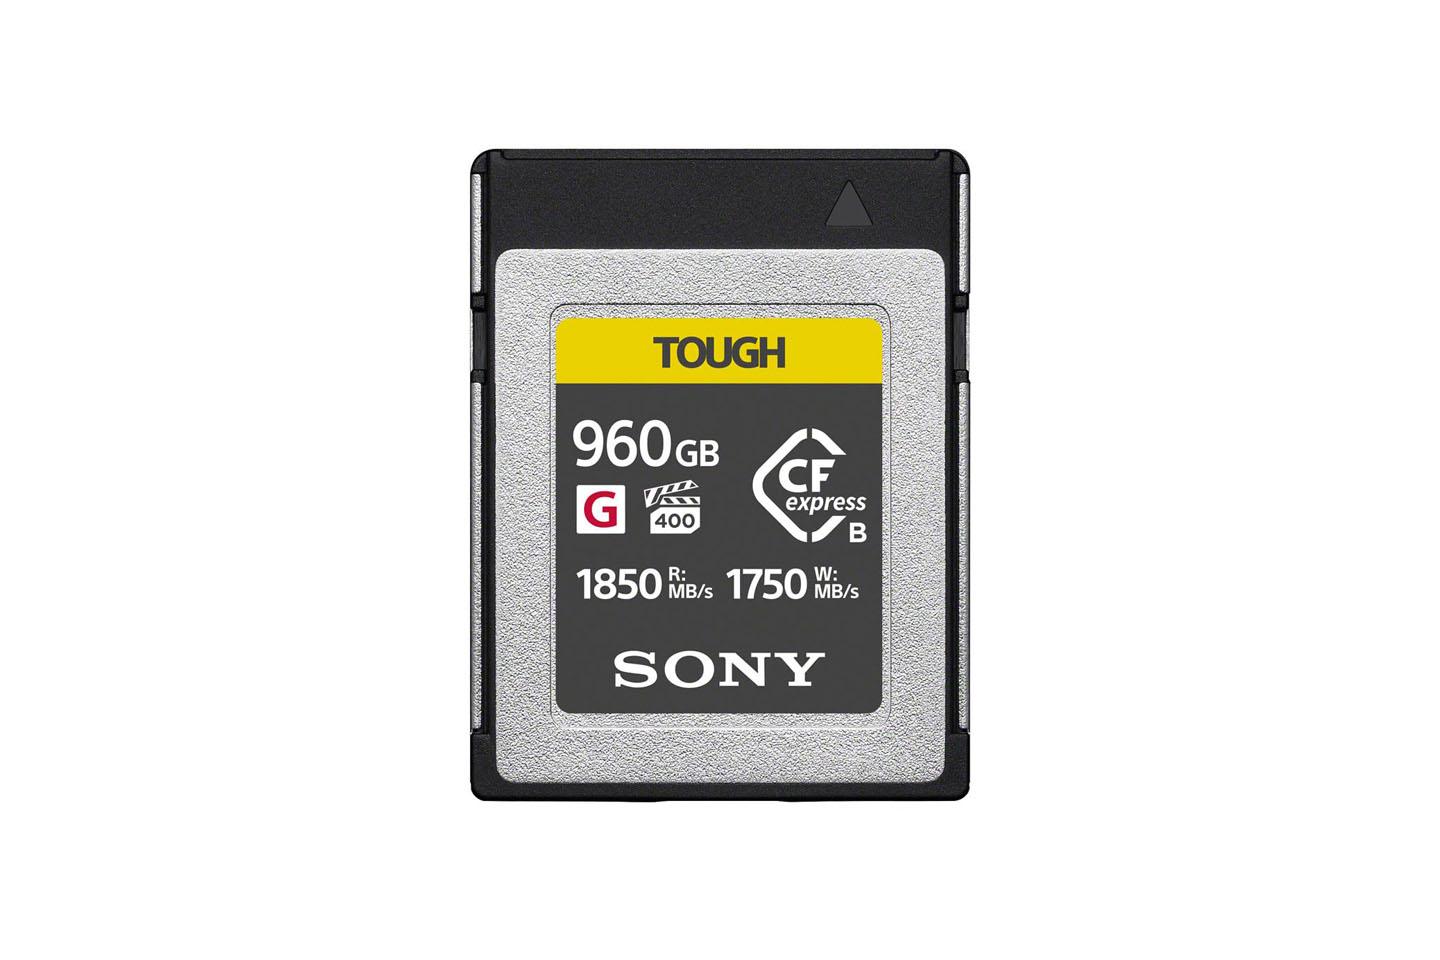 CFexpressTypeBカード960GB(SONY Tough G)VPG400